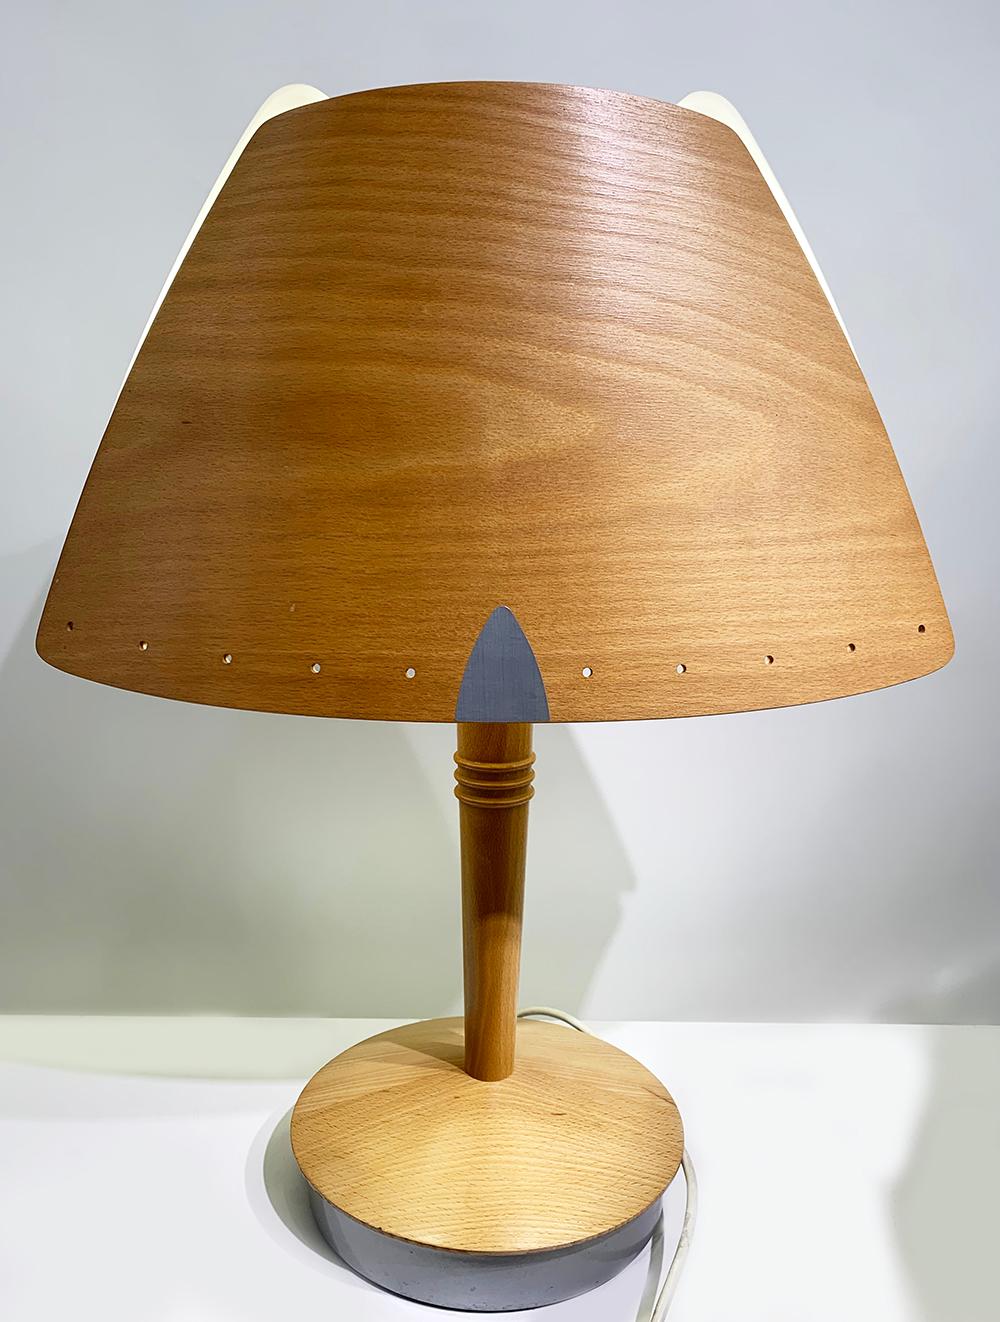 Lampe de table modèle Culote, fabriquée par la firme française lucid et conçue par soren eriksen.
Il a été conçu spécialement pour l'hôtel Hilton de Barcelone dans les années 1970. Base métallique recouverte de bois et de bois stratifié et écran en